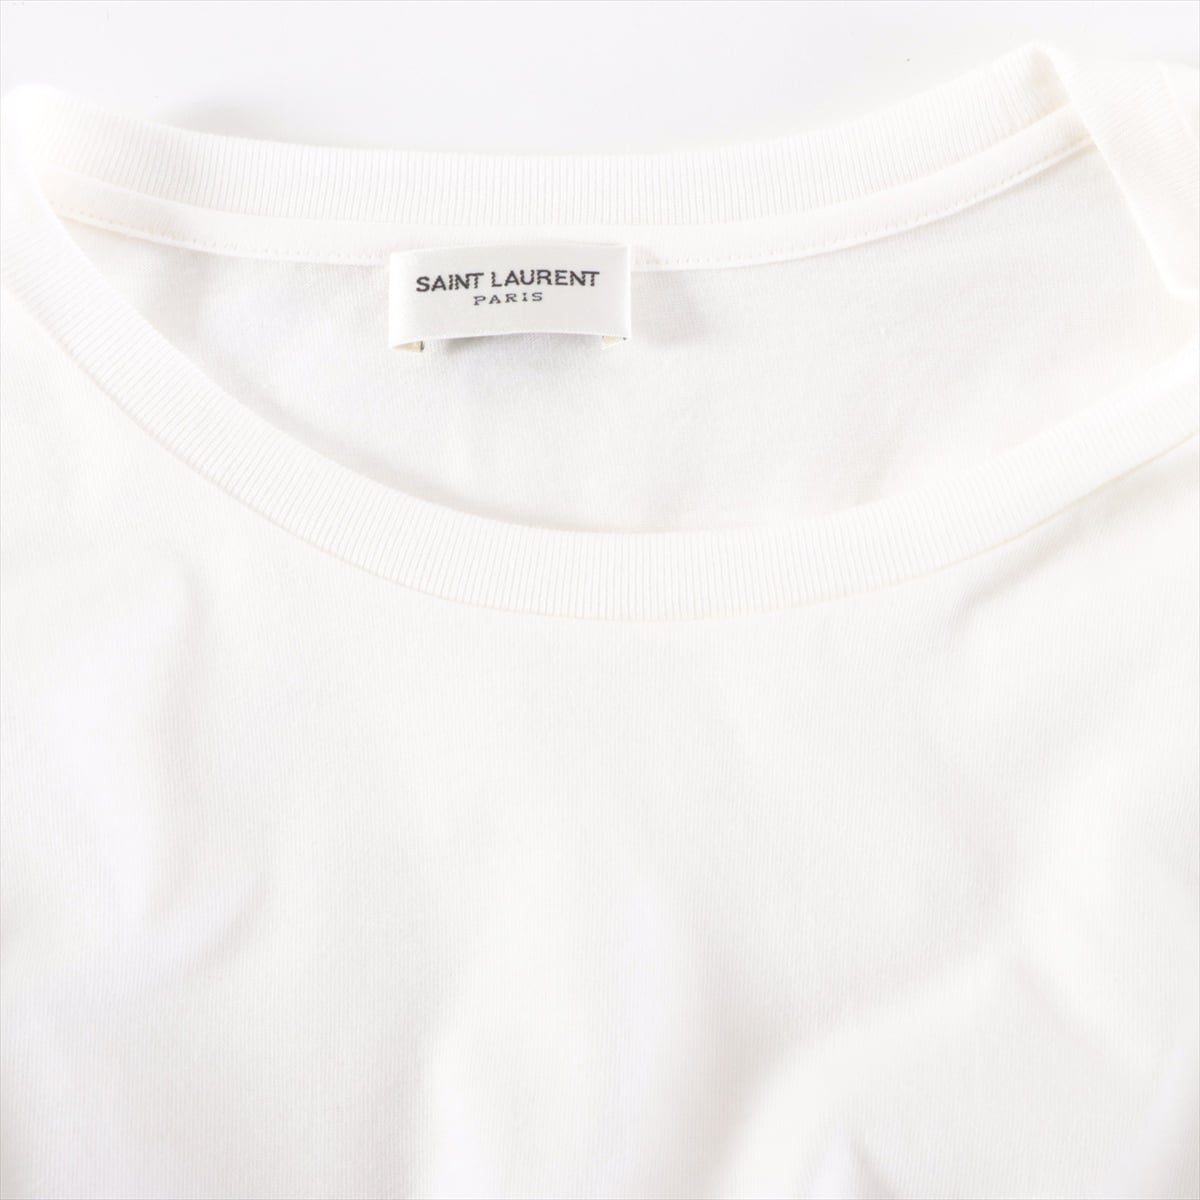 Saint Laurent Paris 21 years Cotton T-shirt M Men's White  663278